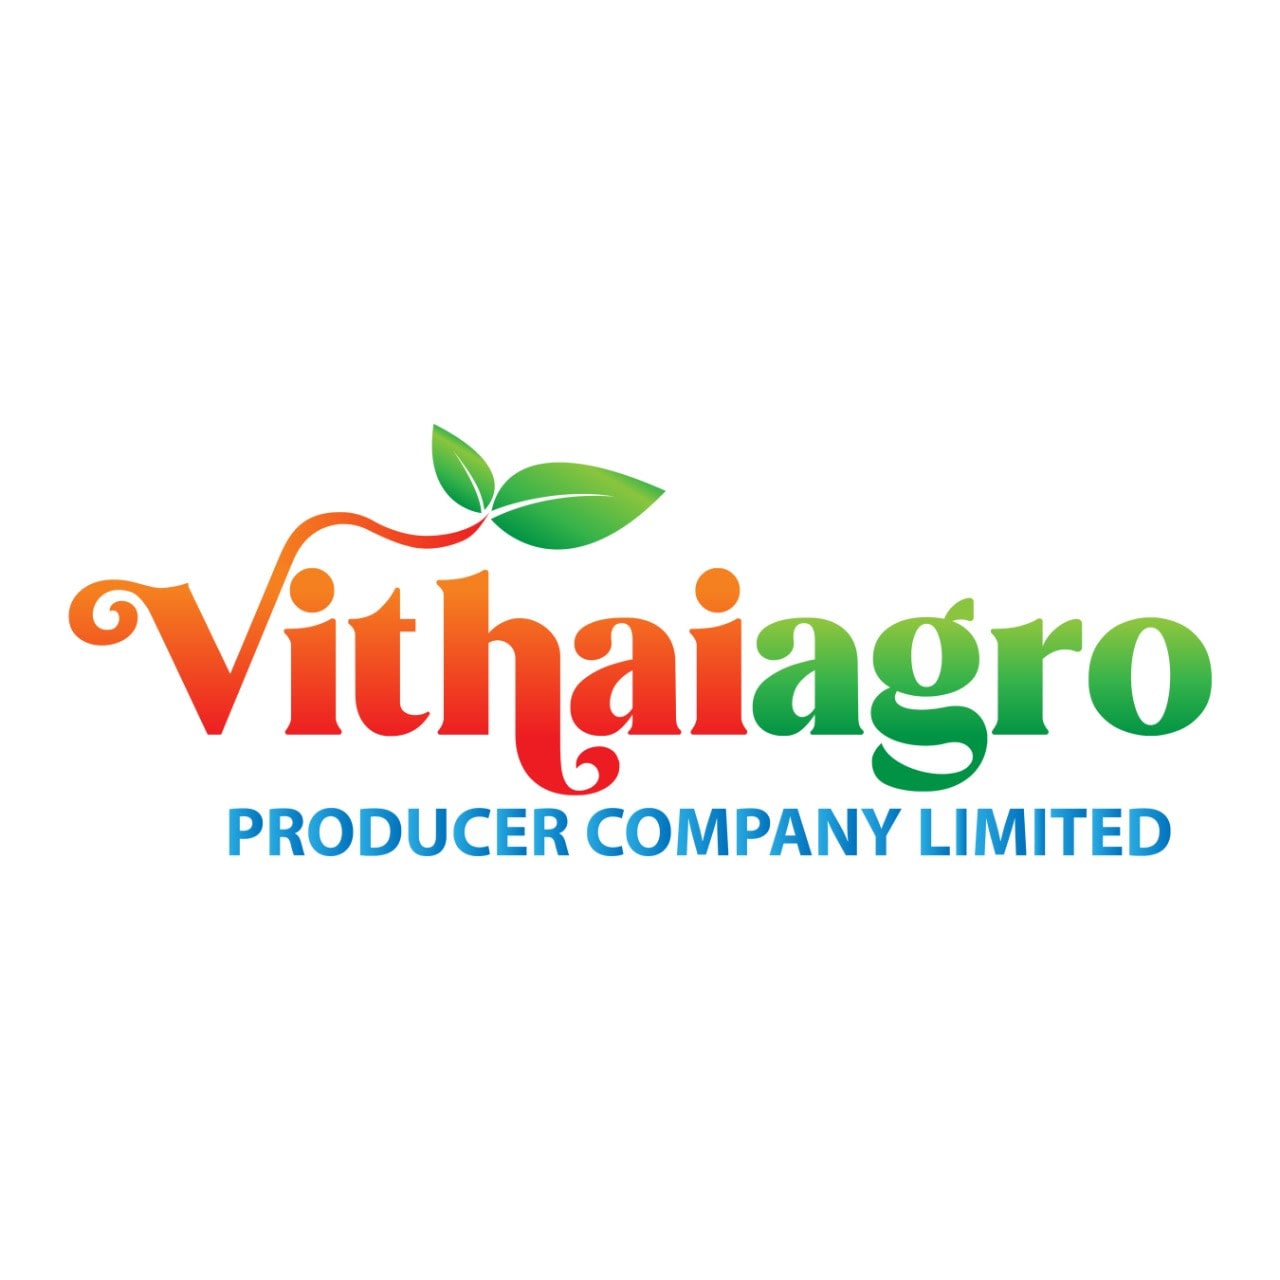 Vithaiagro Producer Company Limited